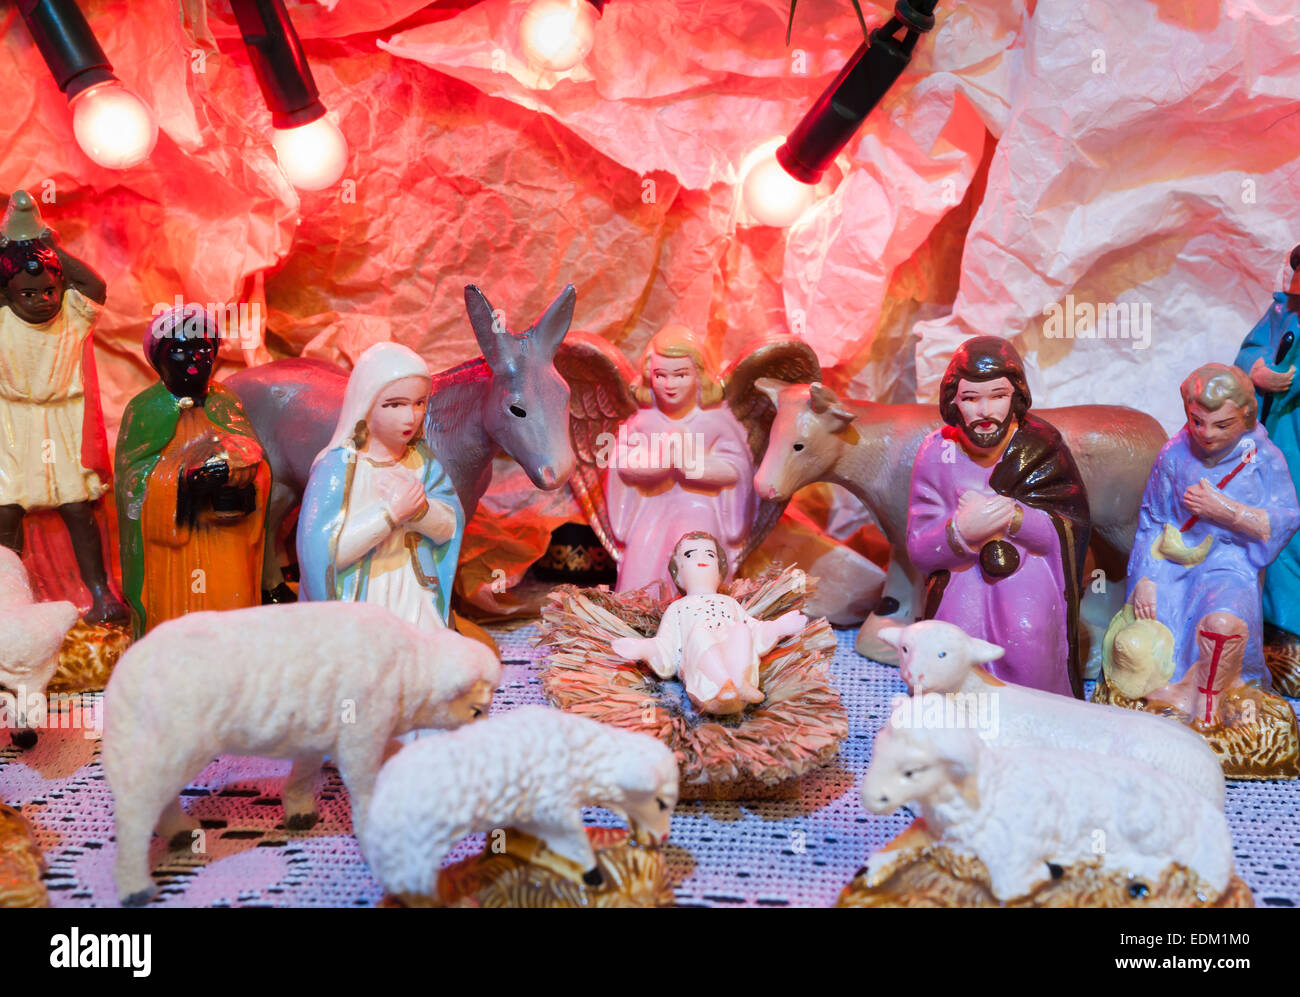 Krippe mit bunten Figuren der Heiligen Maria Joseph drei Könige und Tiere symbolisieren Jesus Geburtsort Bethlehem Krippe Stockfoto